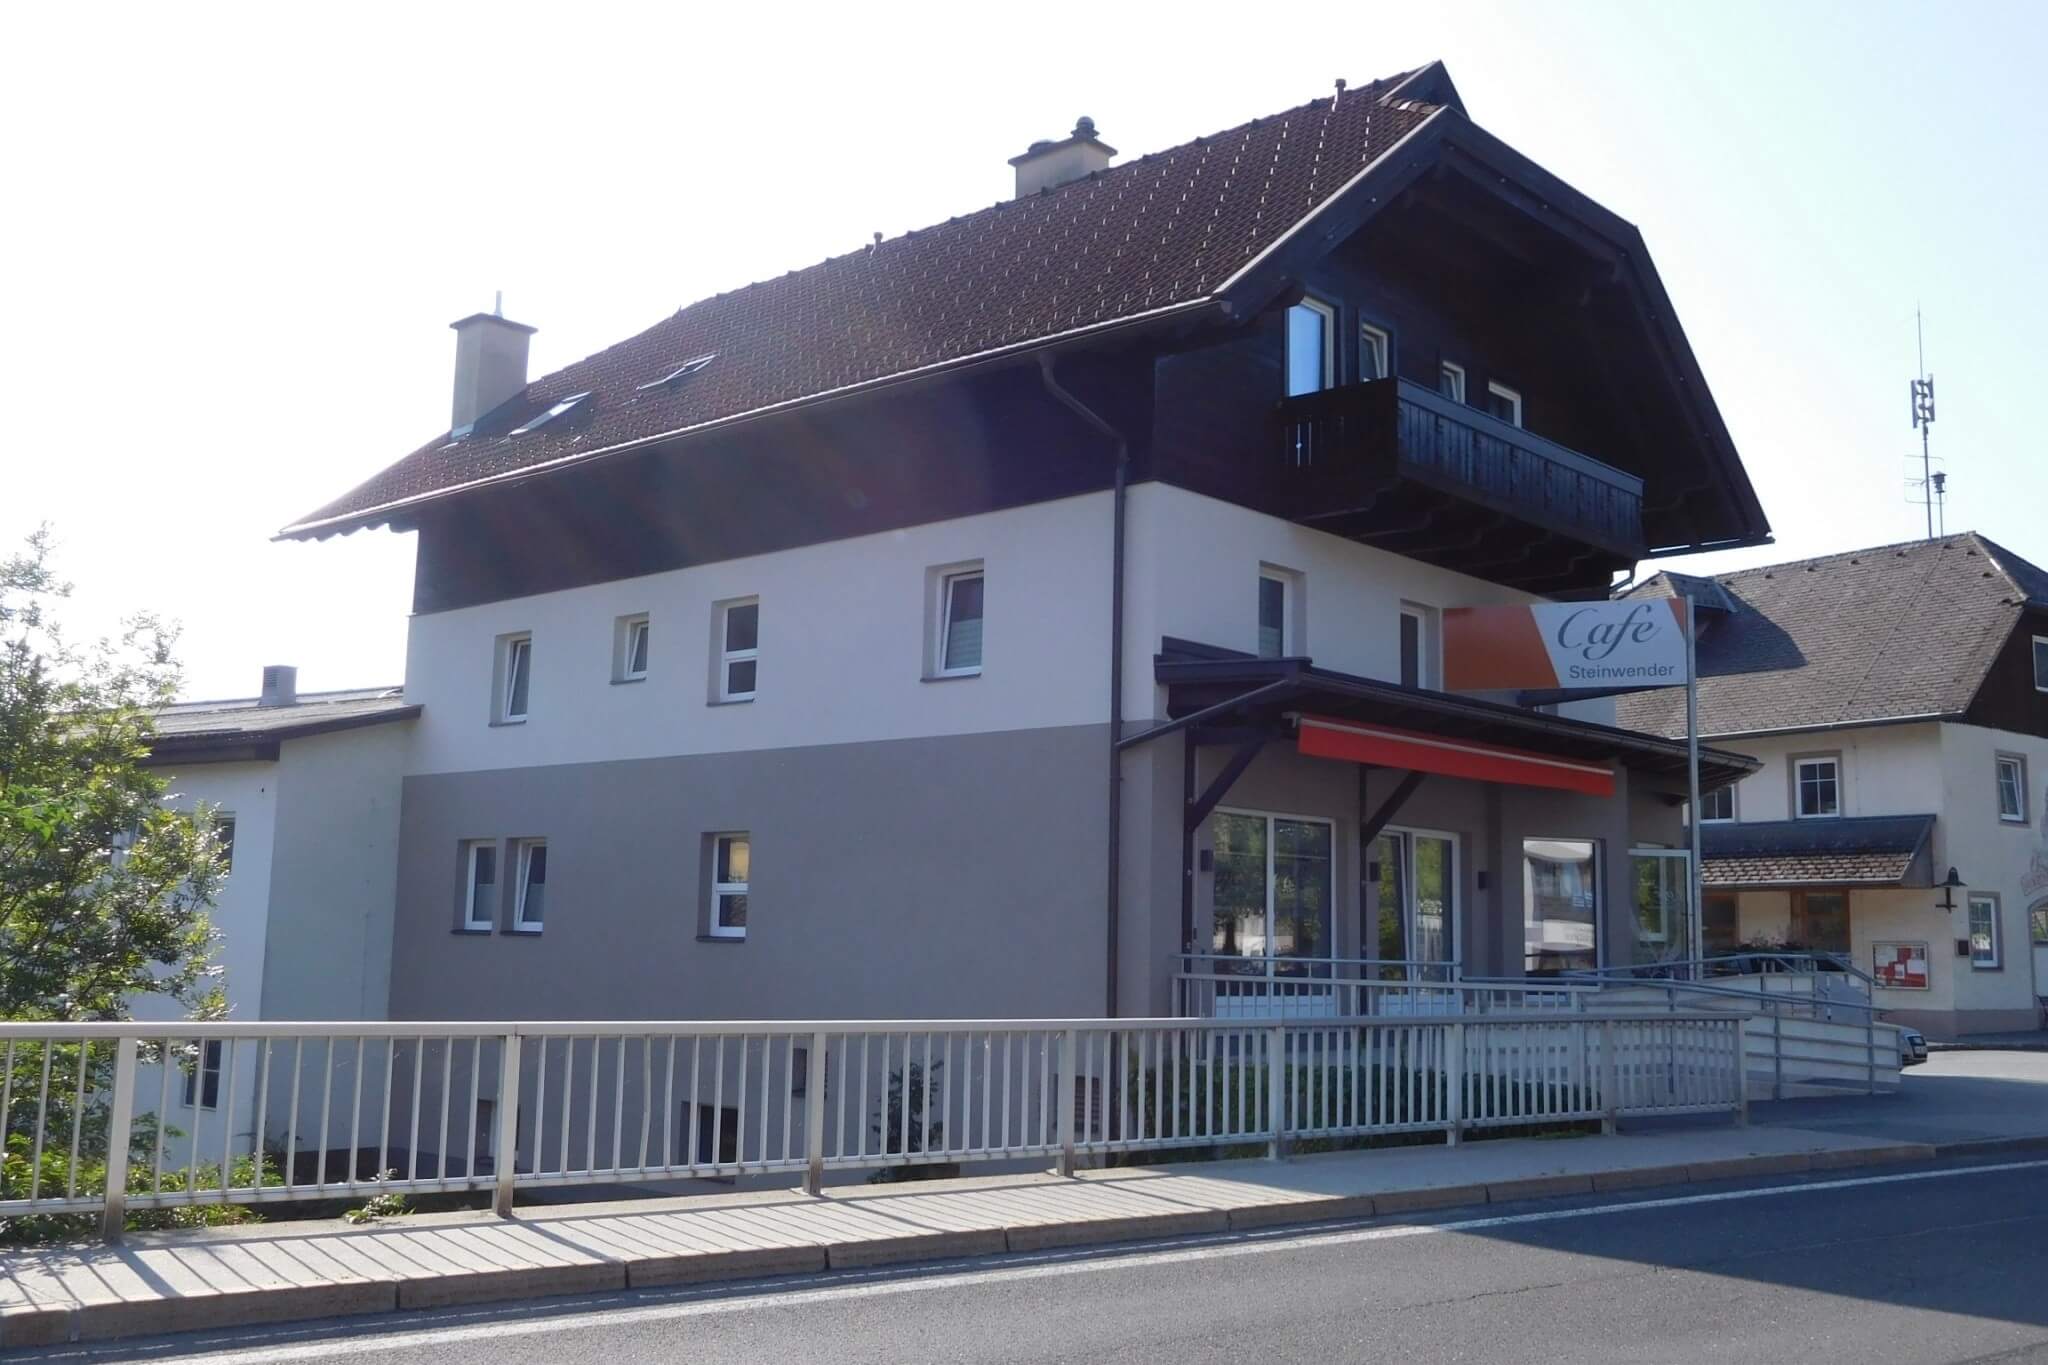 GB Tragwerksplan - Sanierung und Umbau Cafe Steinwender - 05